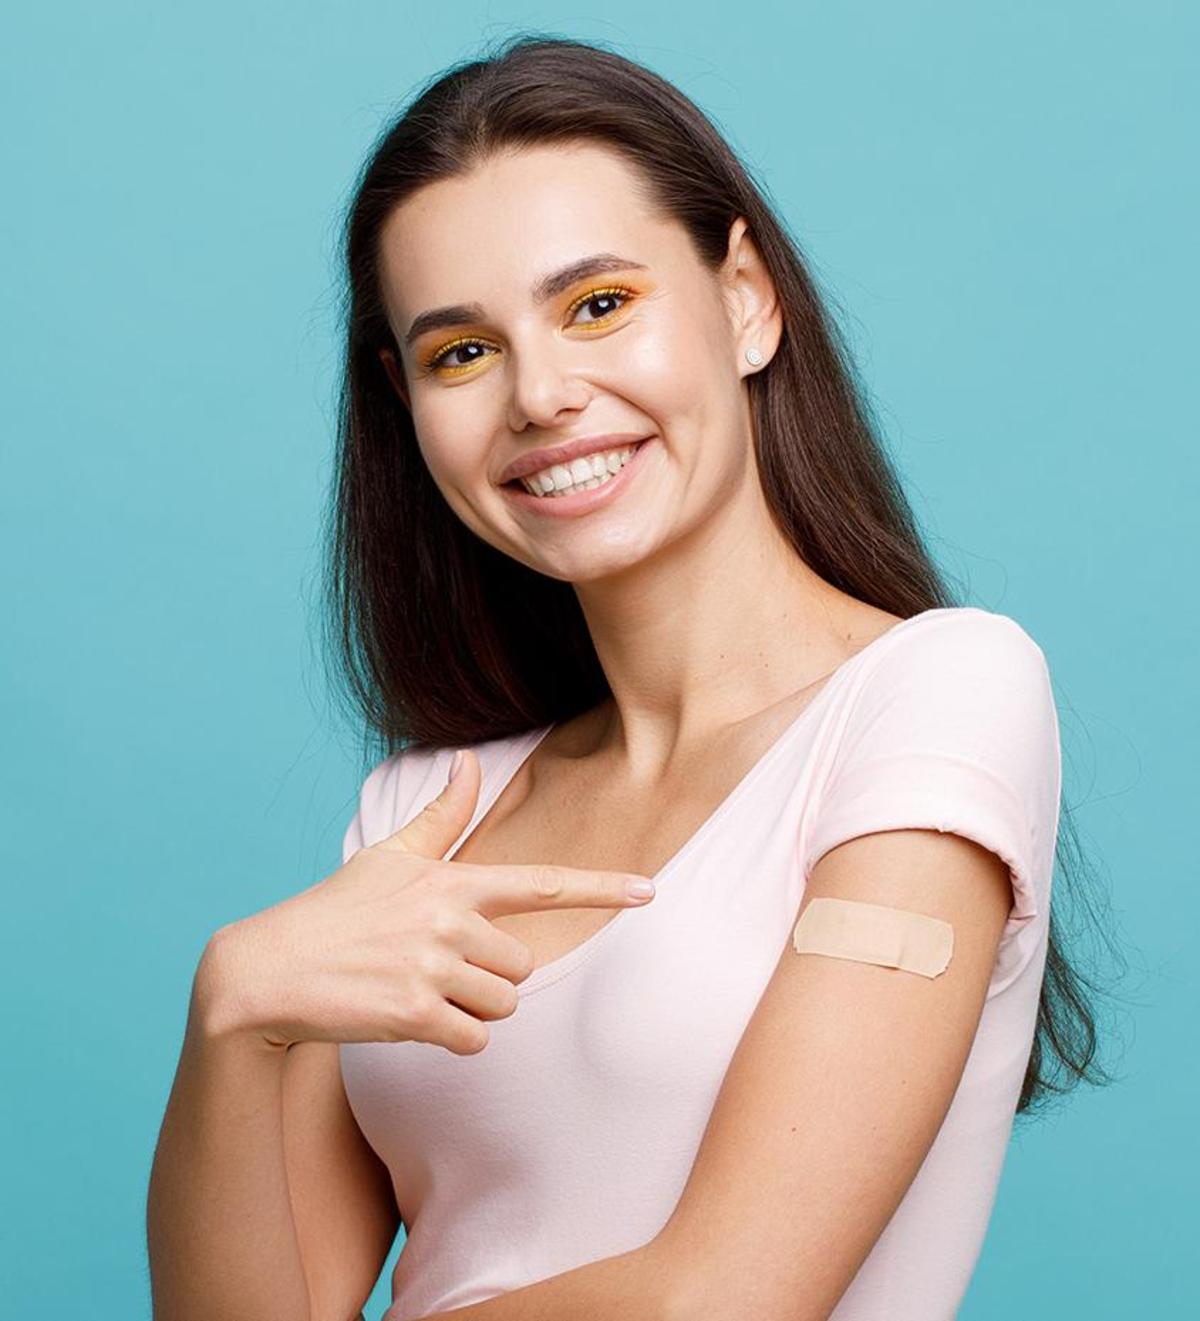 Großansicht: Eine junge Frau verweist lächelnd auf das Impfpflaster an ihrem linken Arm.